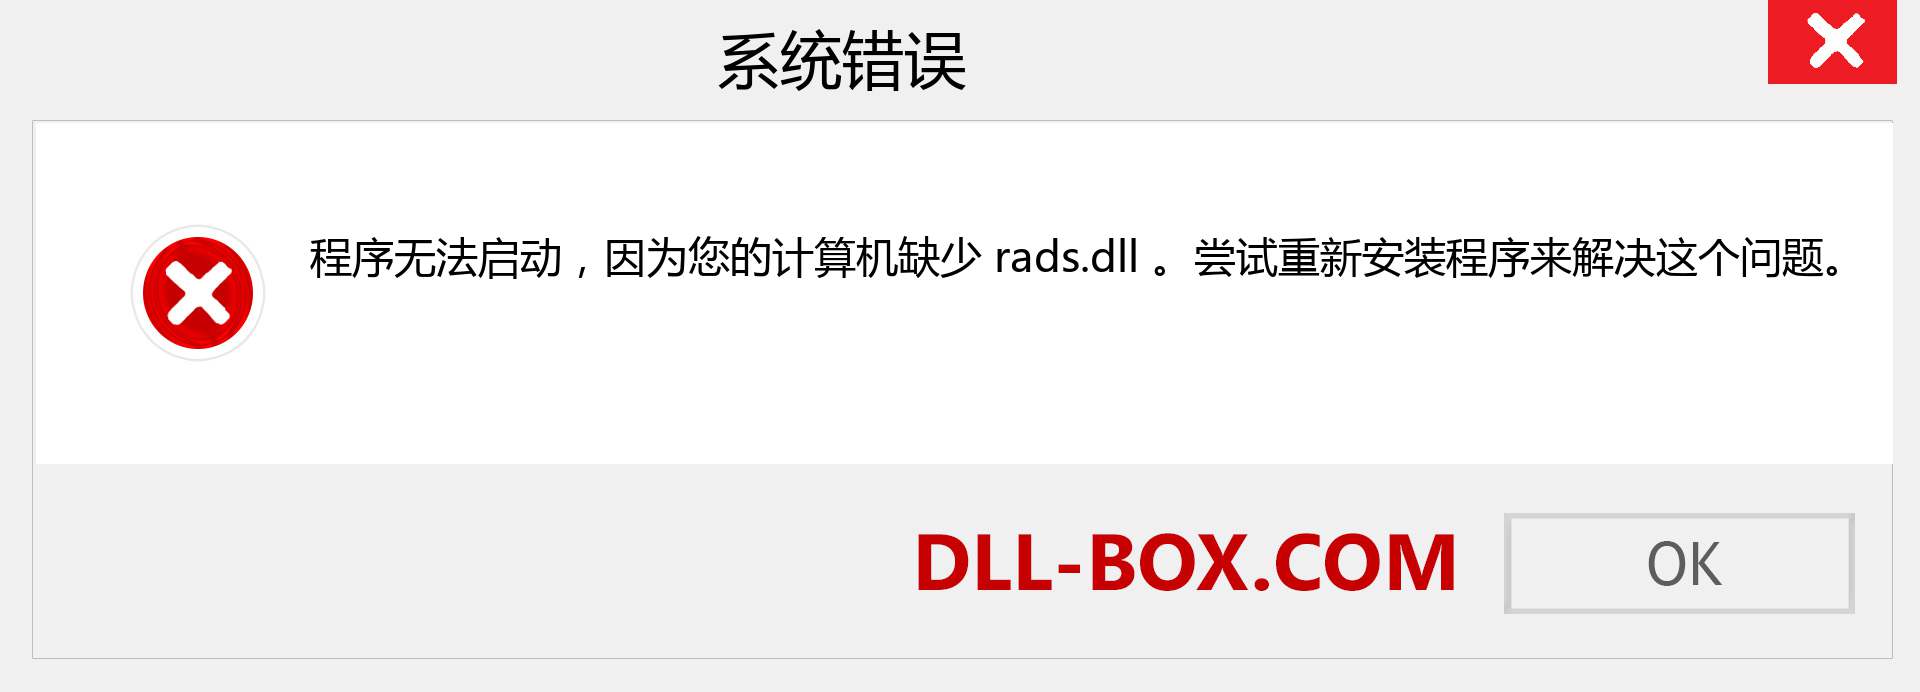 rads.dll 文件丢失？。 适用于 Windows 7、8、10 的下载 - 修复 Windows、照片、图像上的 rads dll 丢失错误